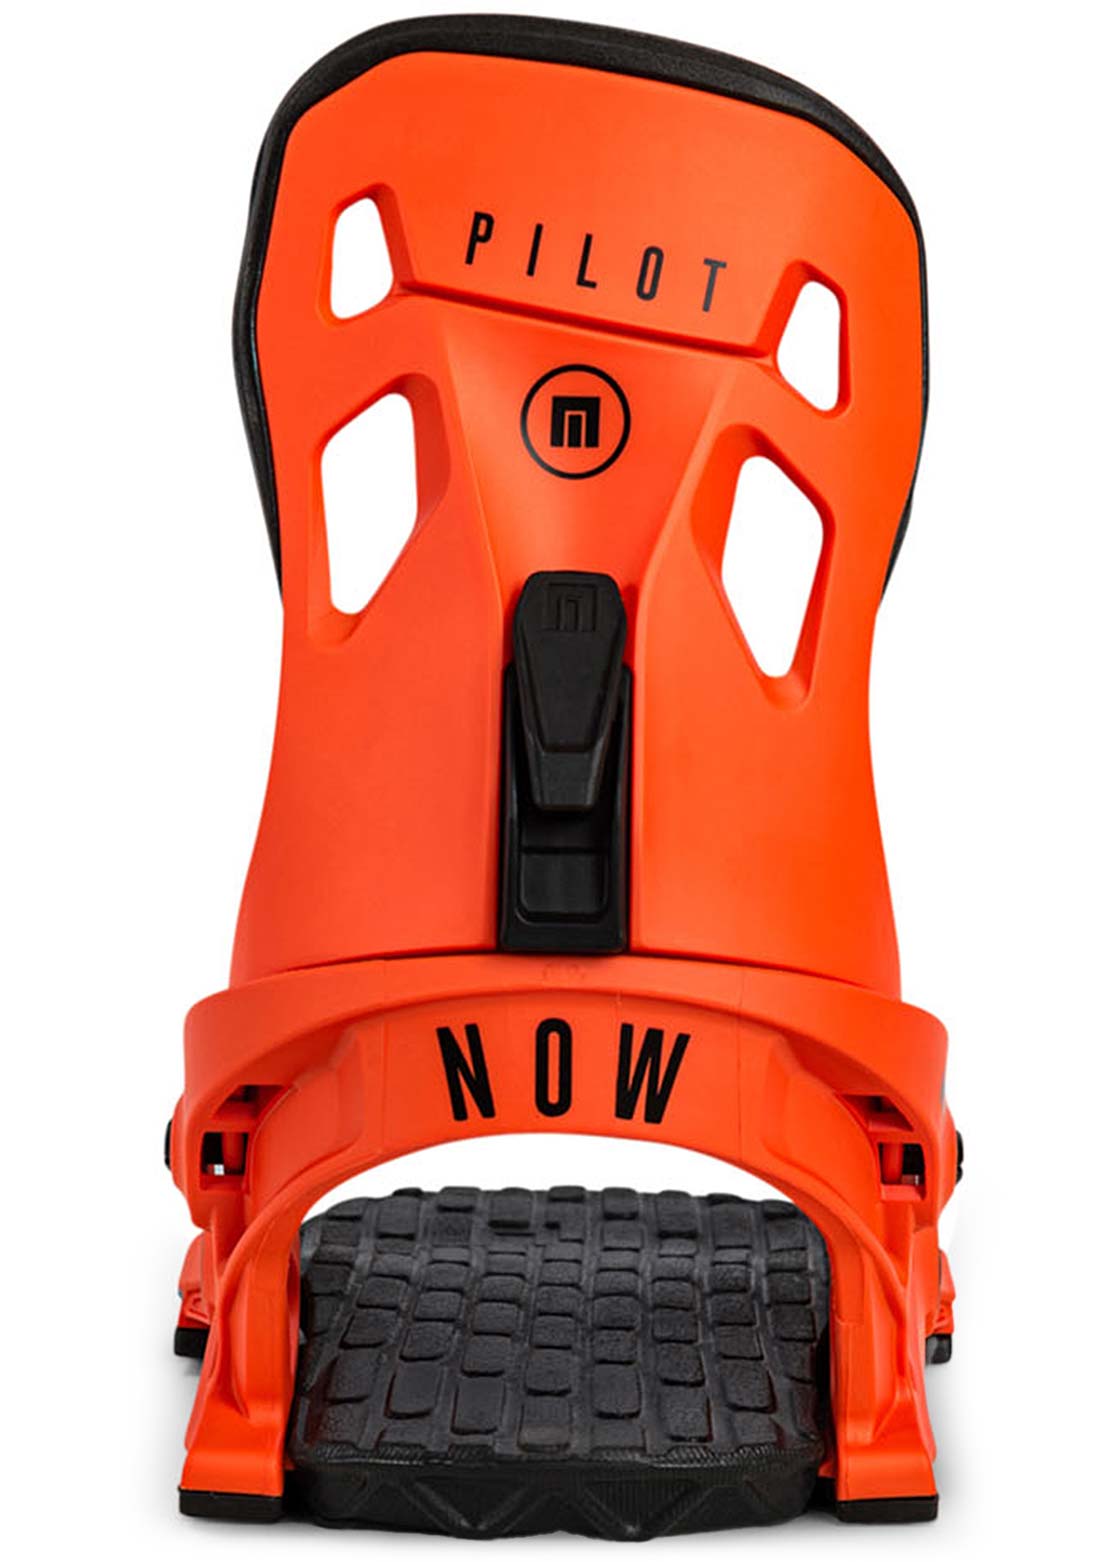 NOW Pilot Snowboard Binding Orange